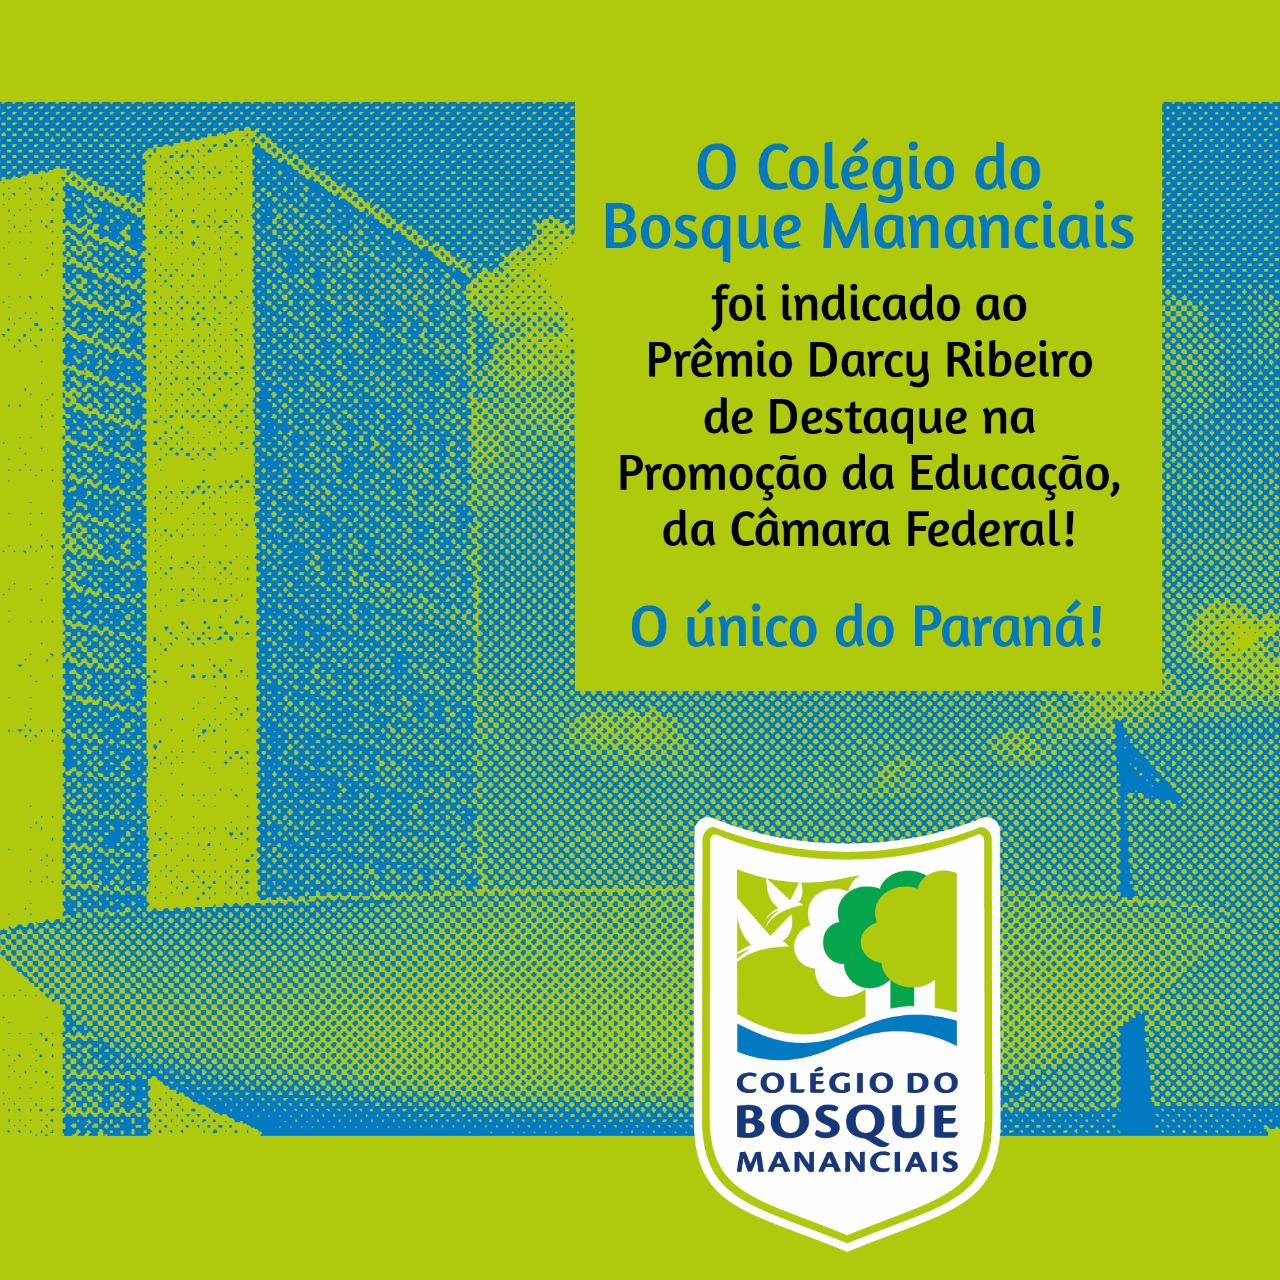 Colégio do Bosque Mananciais é indicado ao Prêmio de Destaque na Promoção da Educação, da Câmara Federal